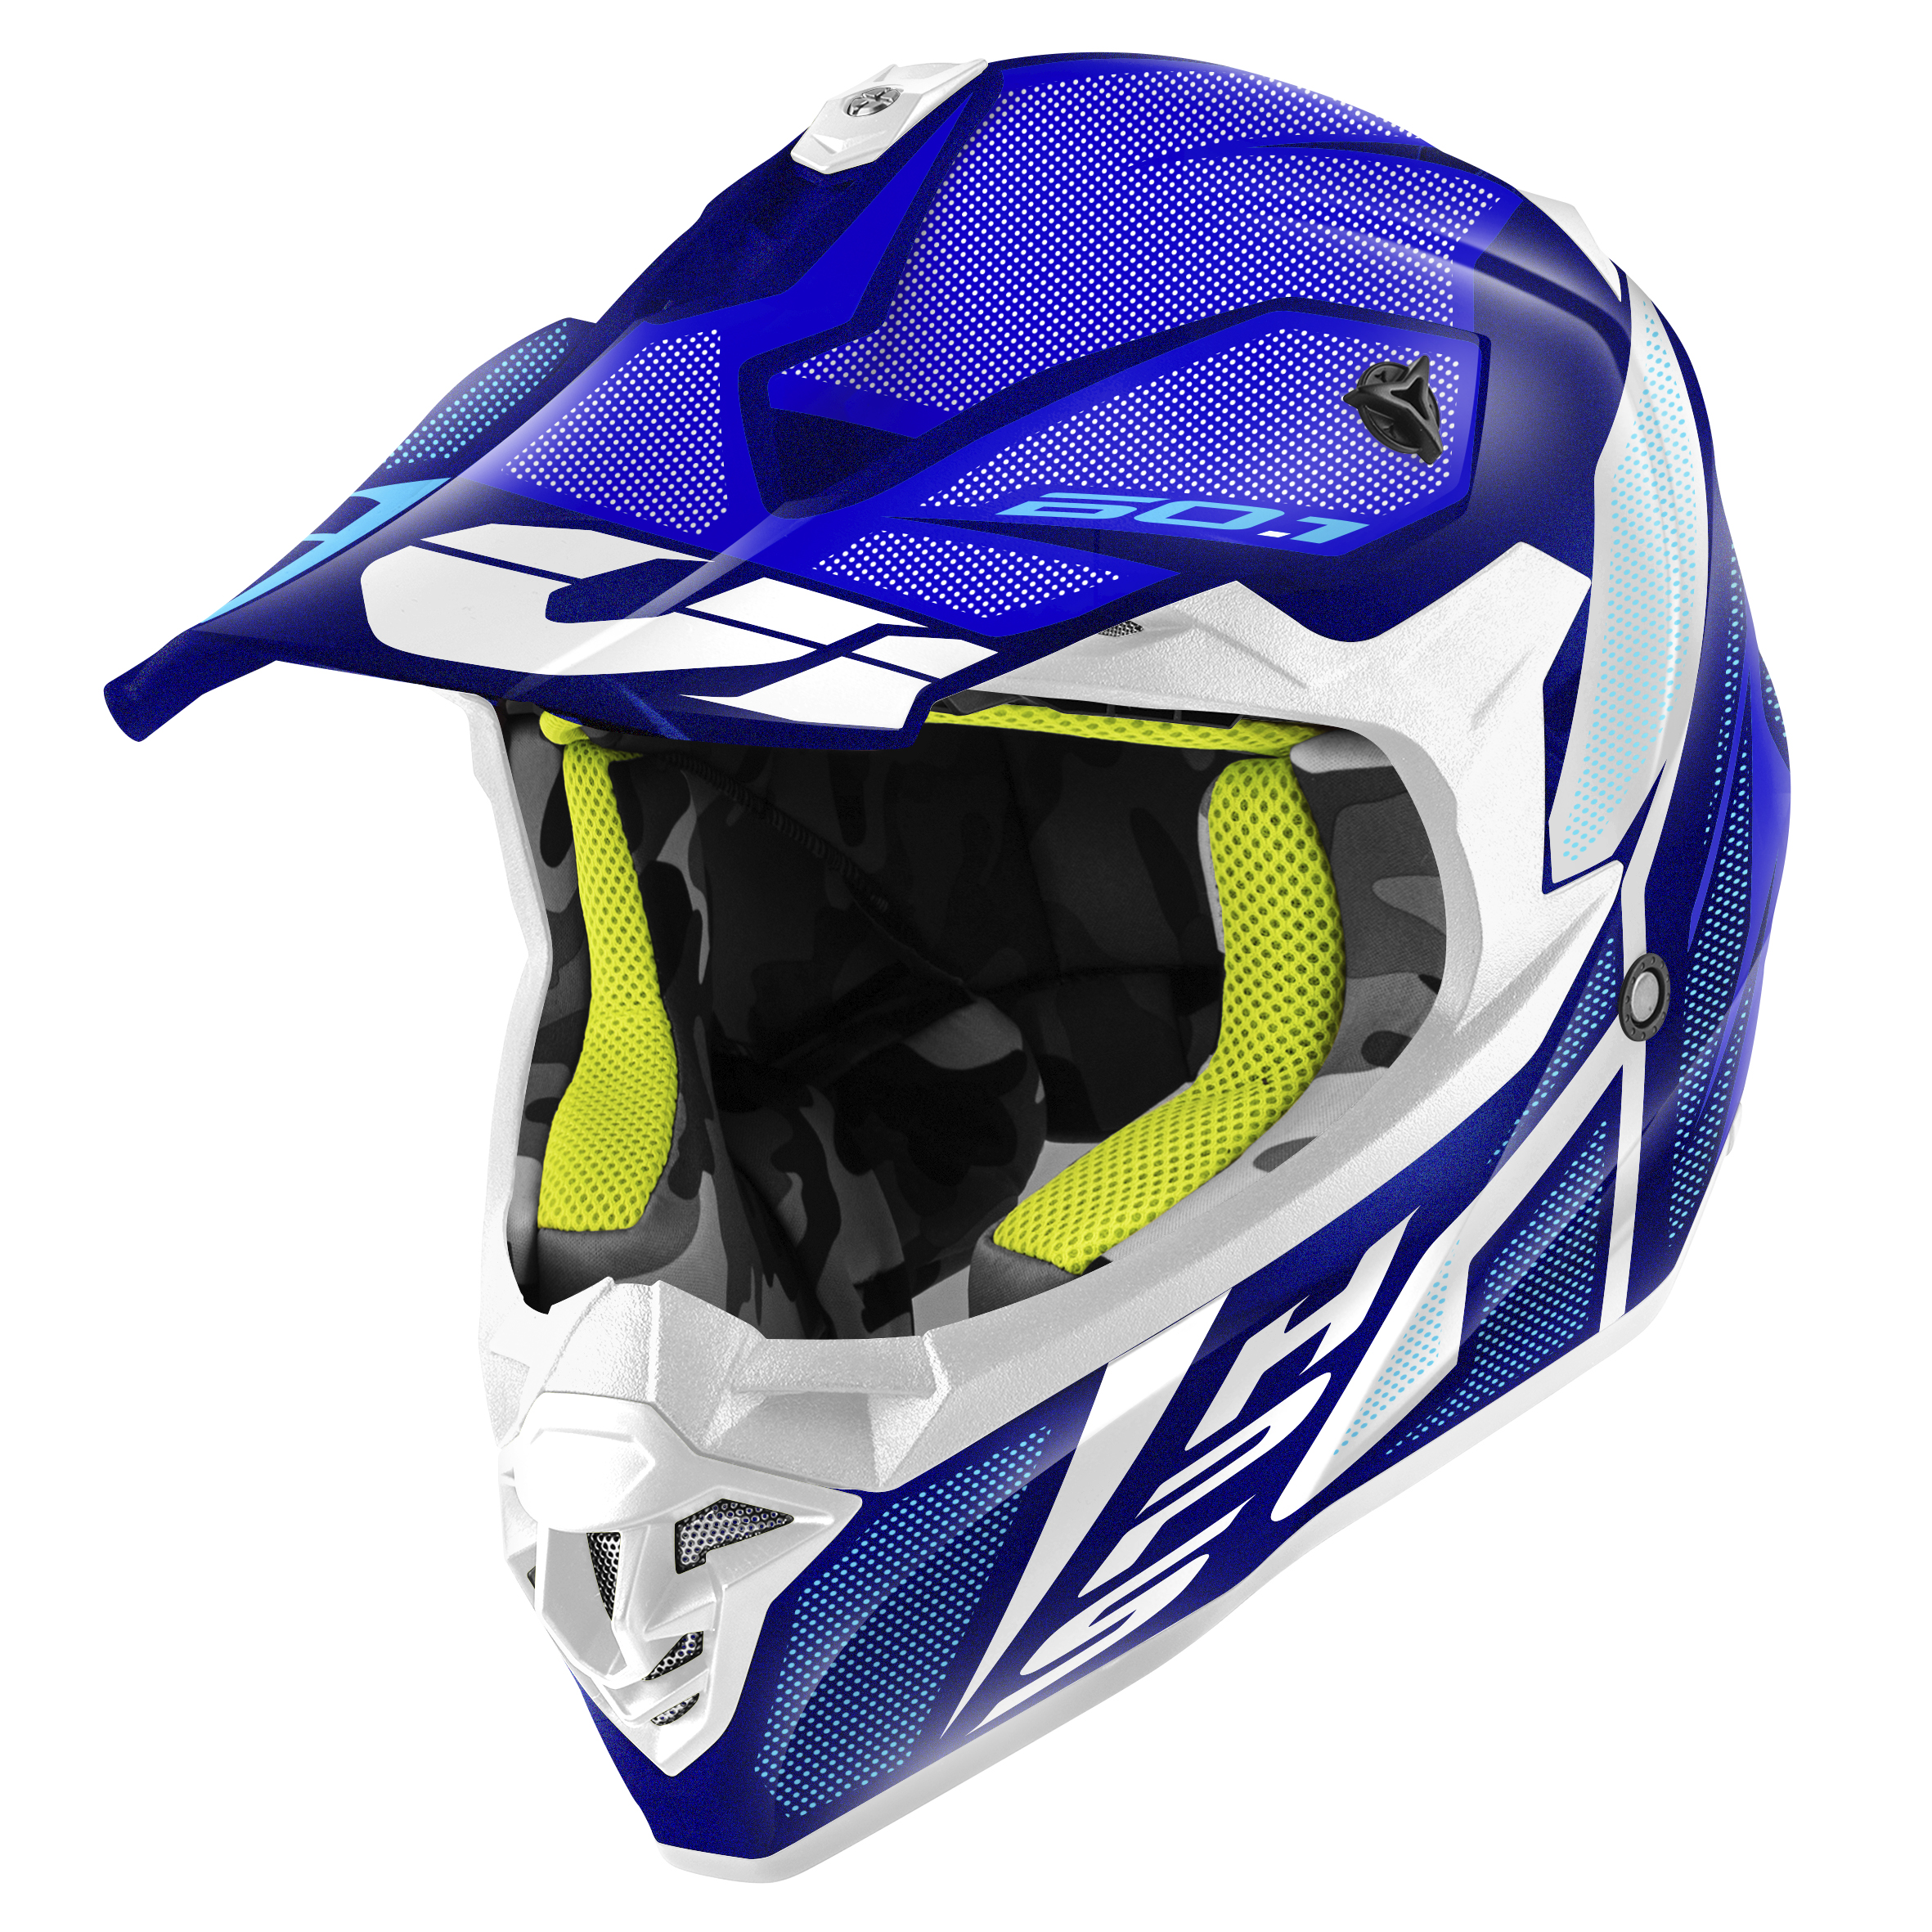 GIVI 60.1 Invert Bleu-Blanc - Casque moto cross